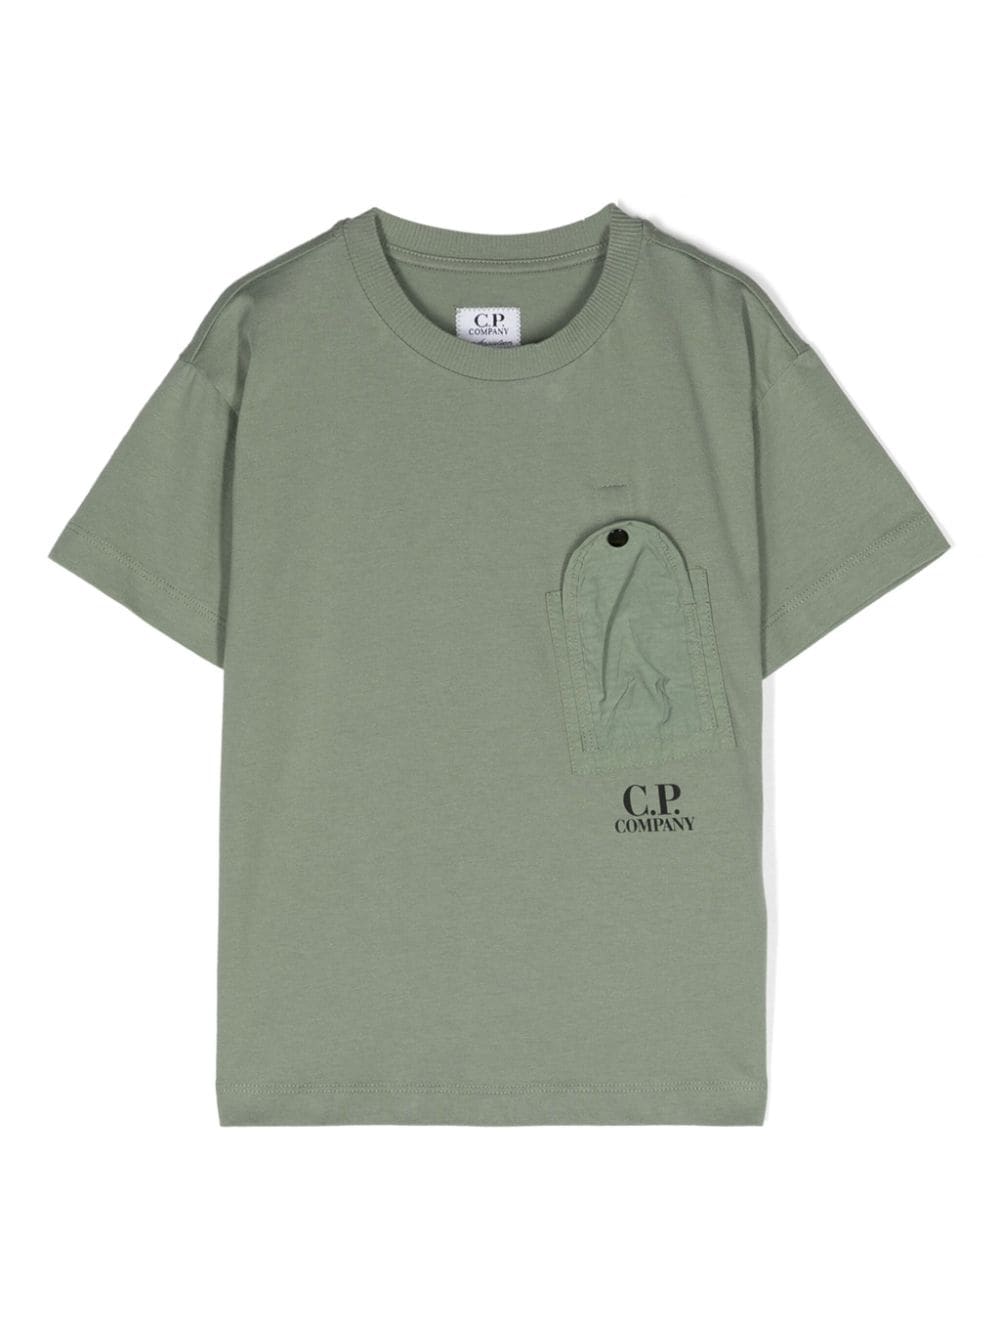 T-shirt enfant vert olive